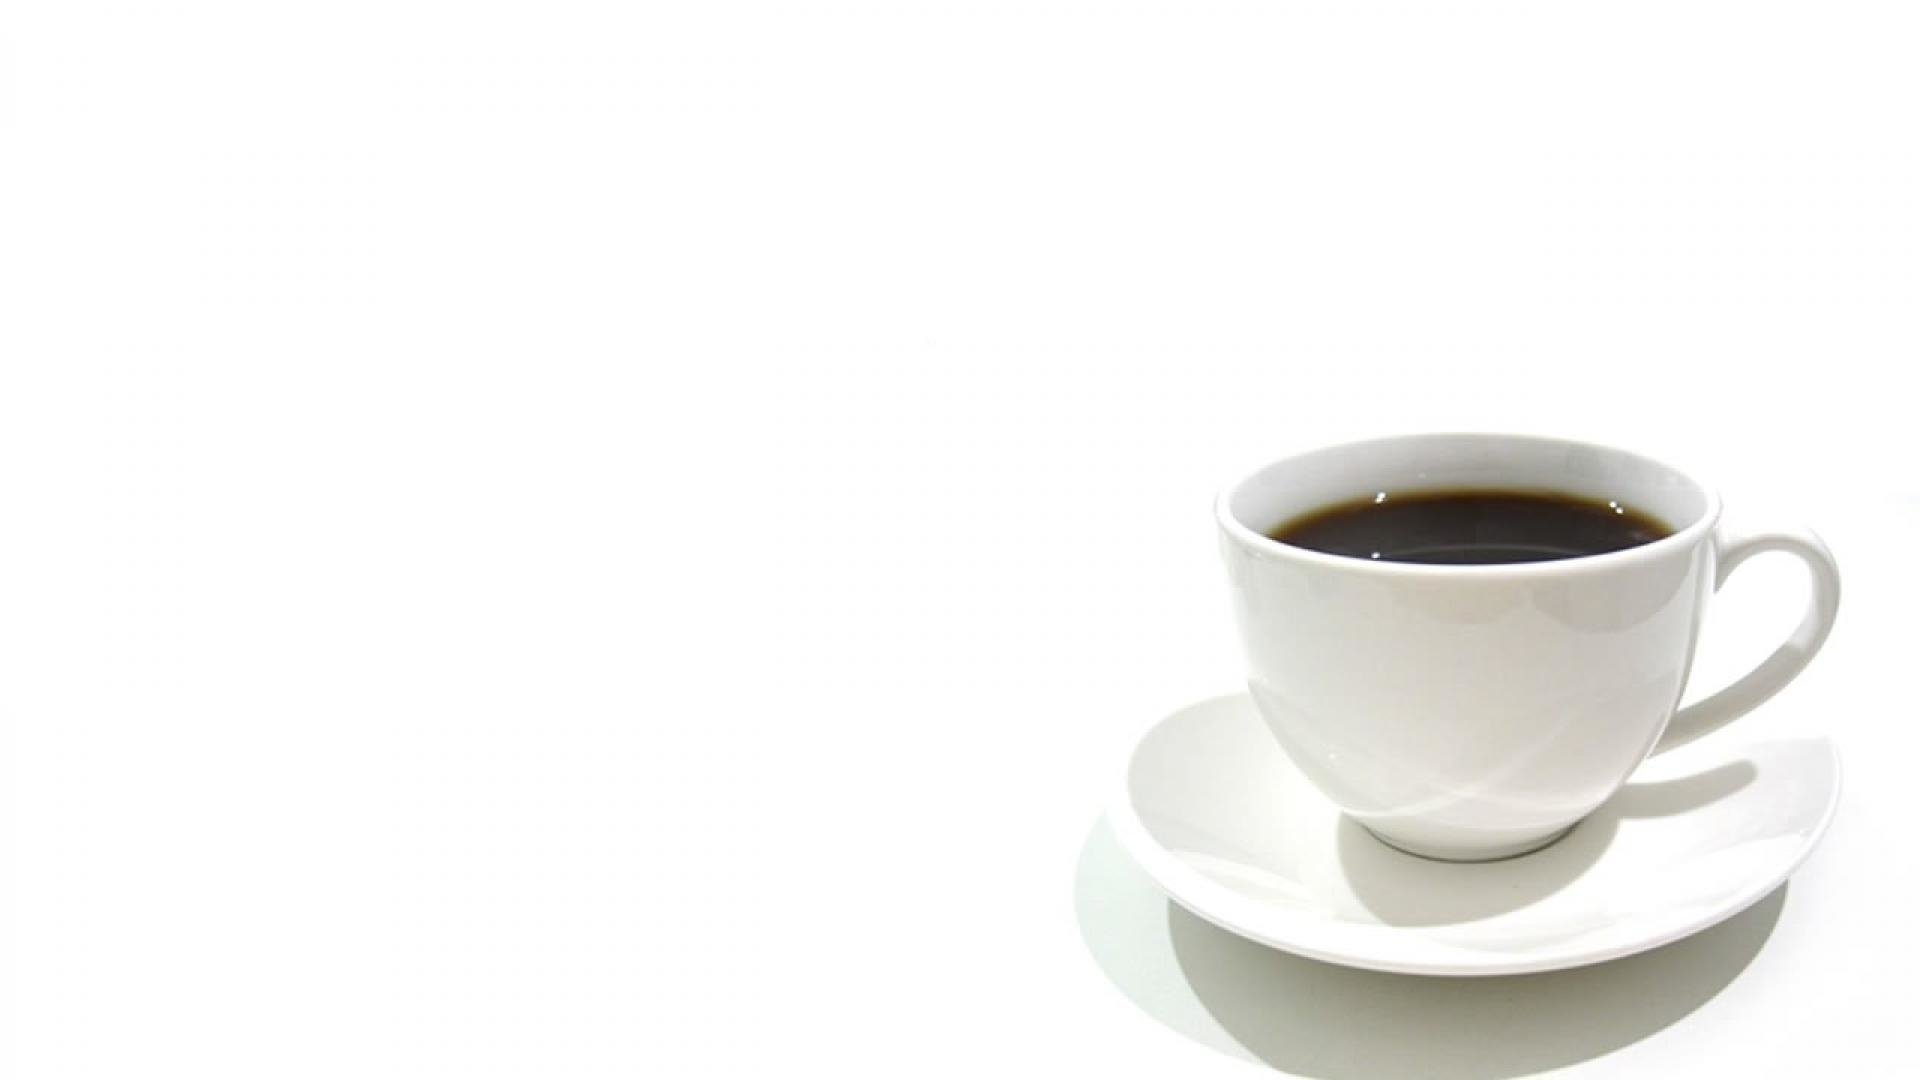 コーヒーの壁紙,カップ,コーヒーカップ,カップ,タンポポのコーヒー,食器